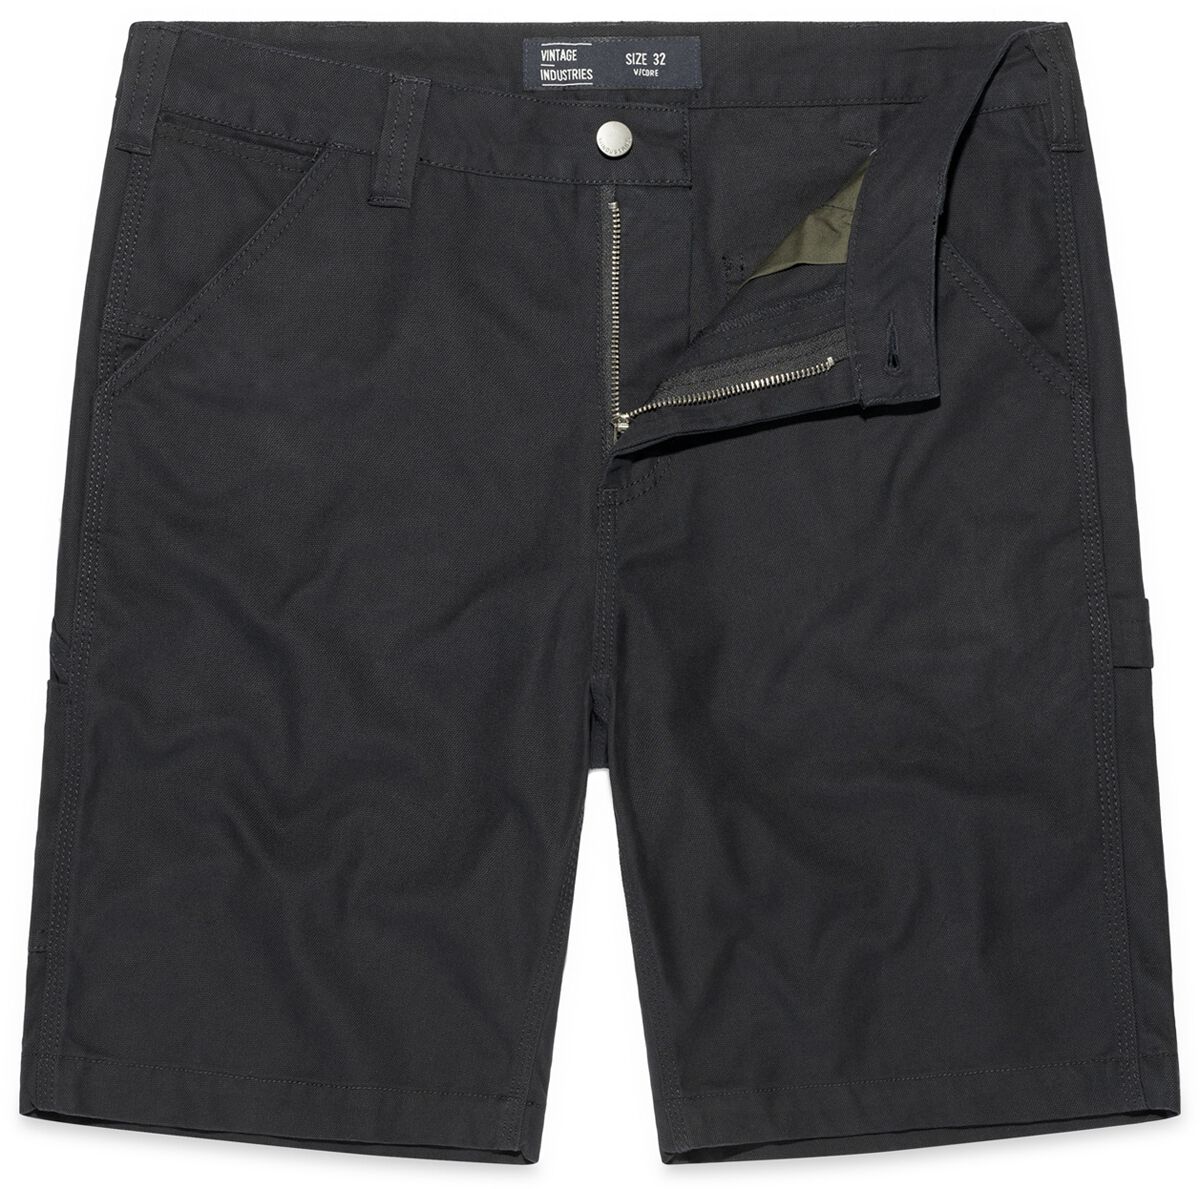 Vintage Industries Short - Dayton Shorts - 32 bis 38 - für Männer - Größe 36 - schwarz